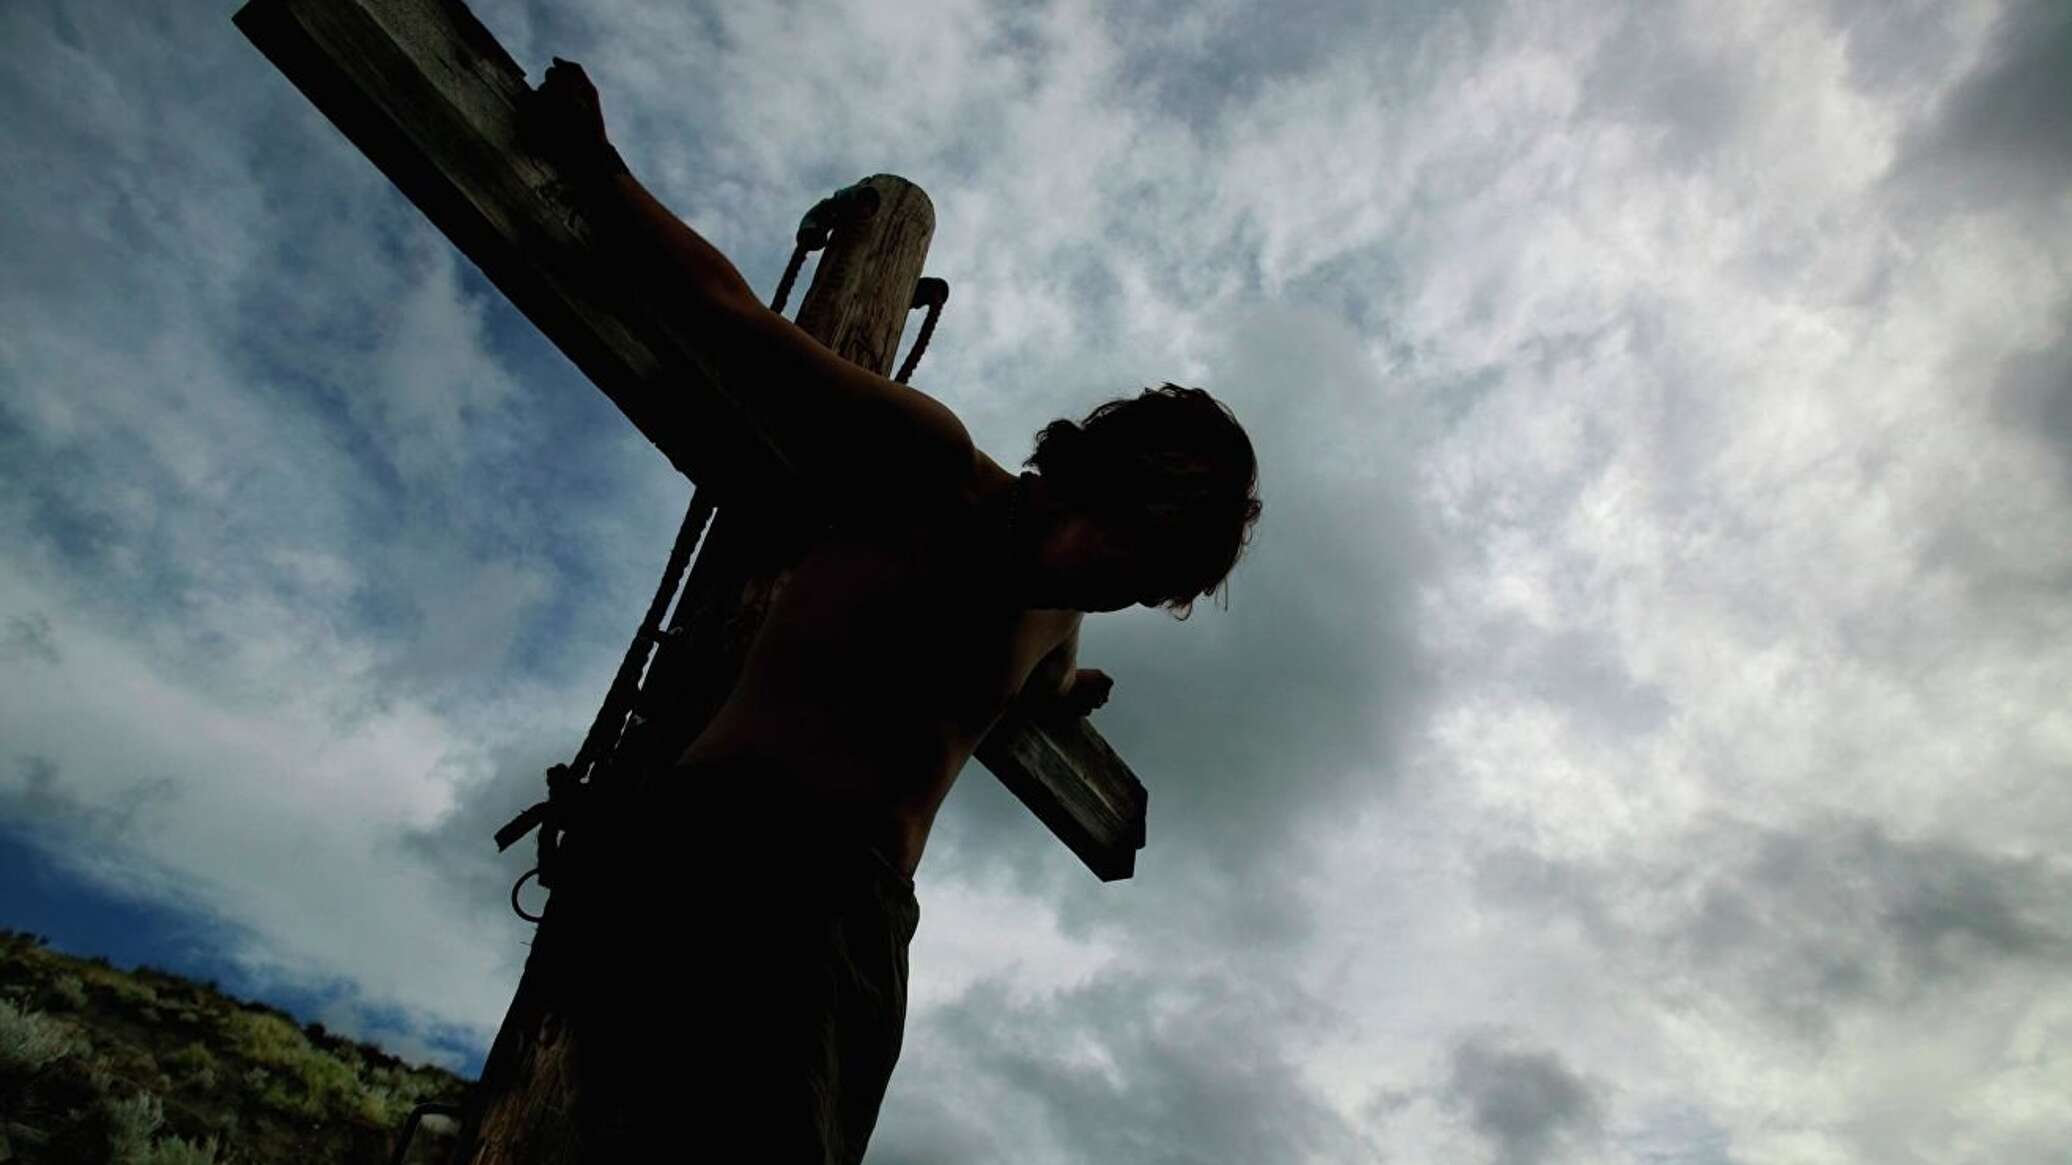 Иисус христос распятый на кресте фото